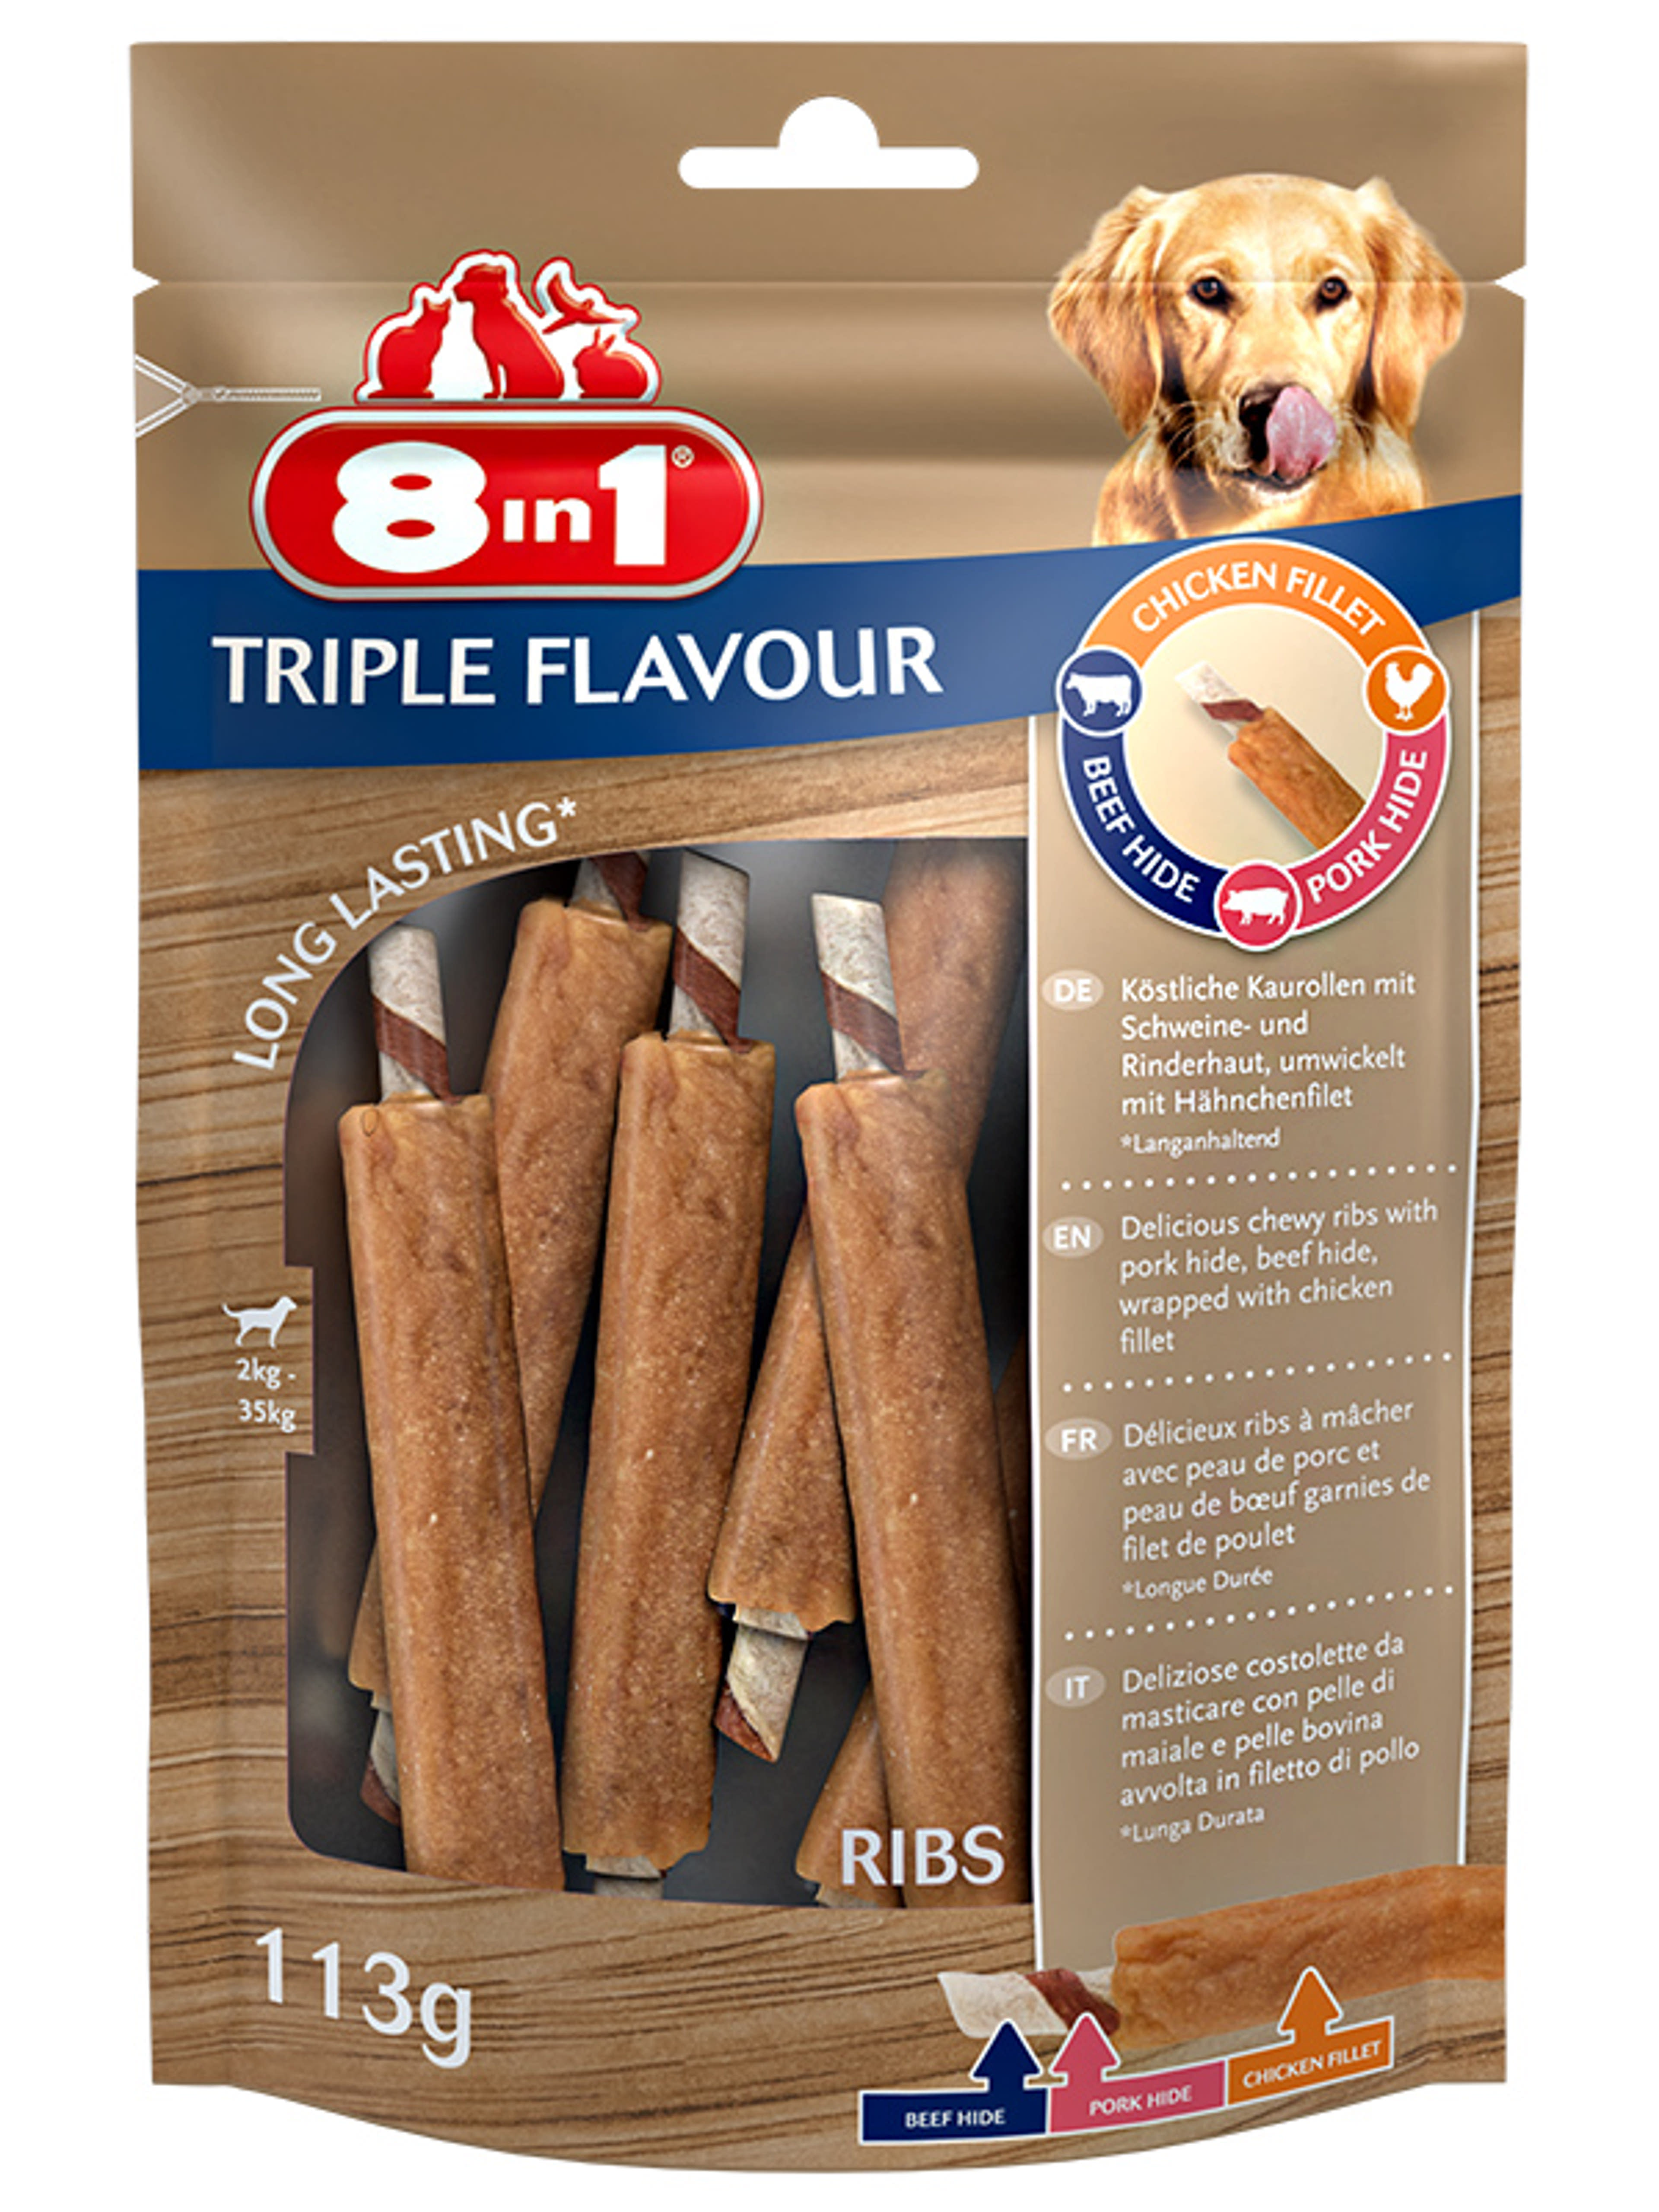 8 in 1 Triple Flavour jutalomfalat kutyáknak, ribs - 6 db